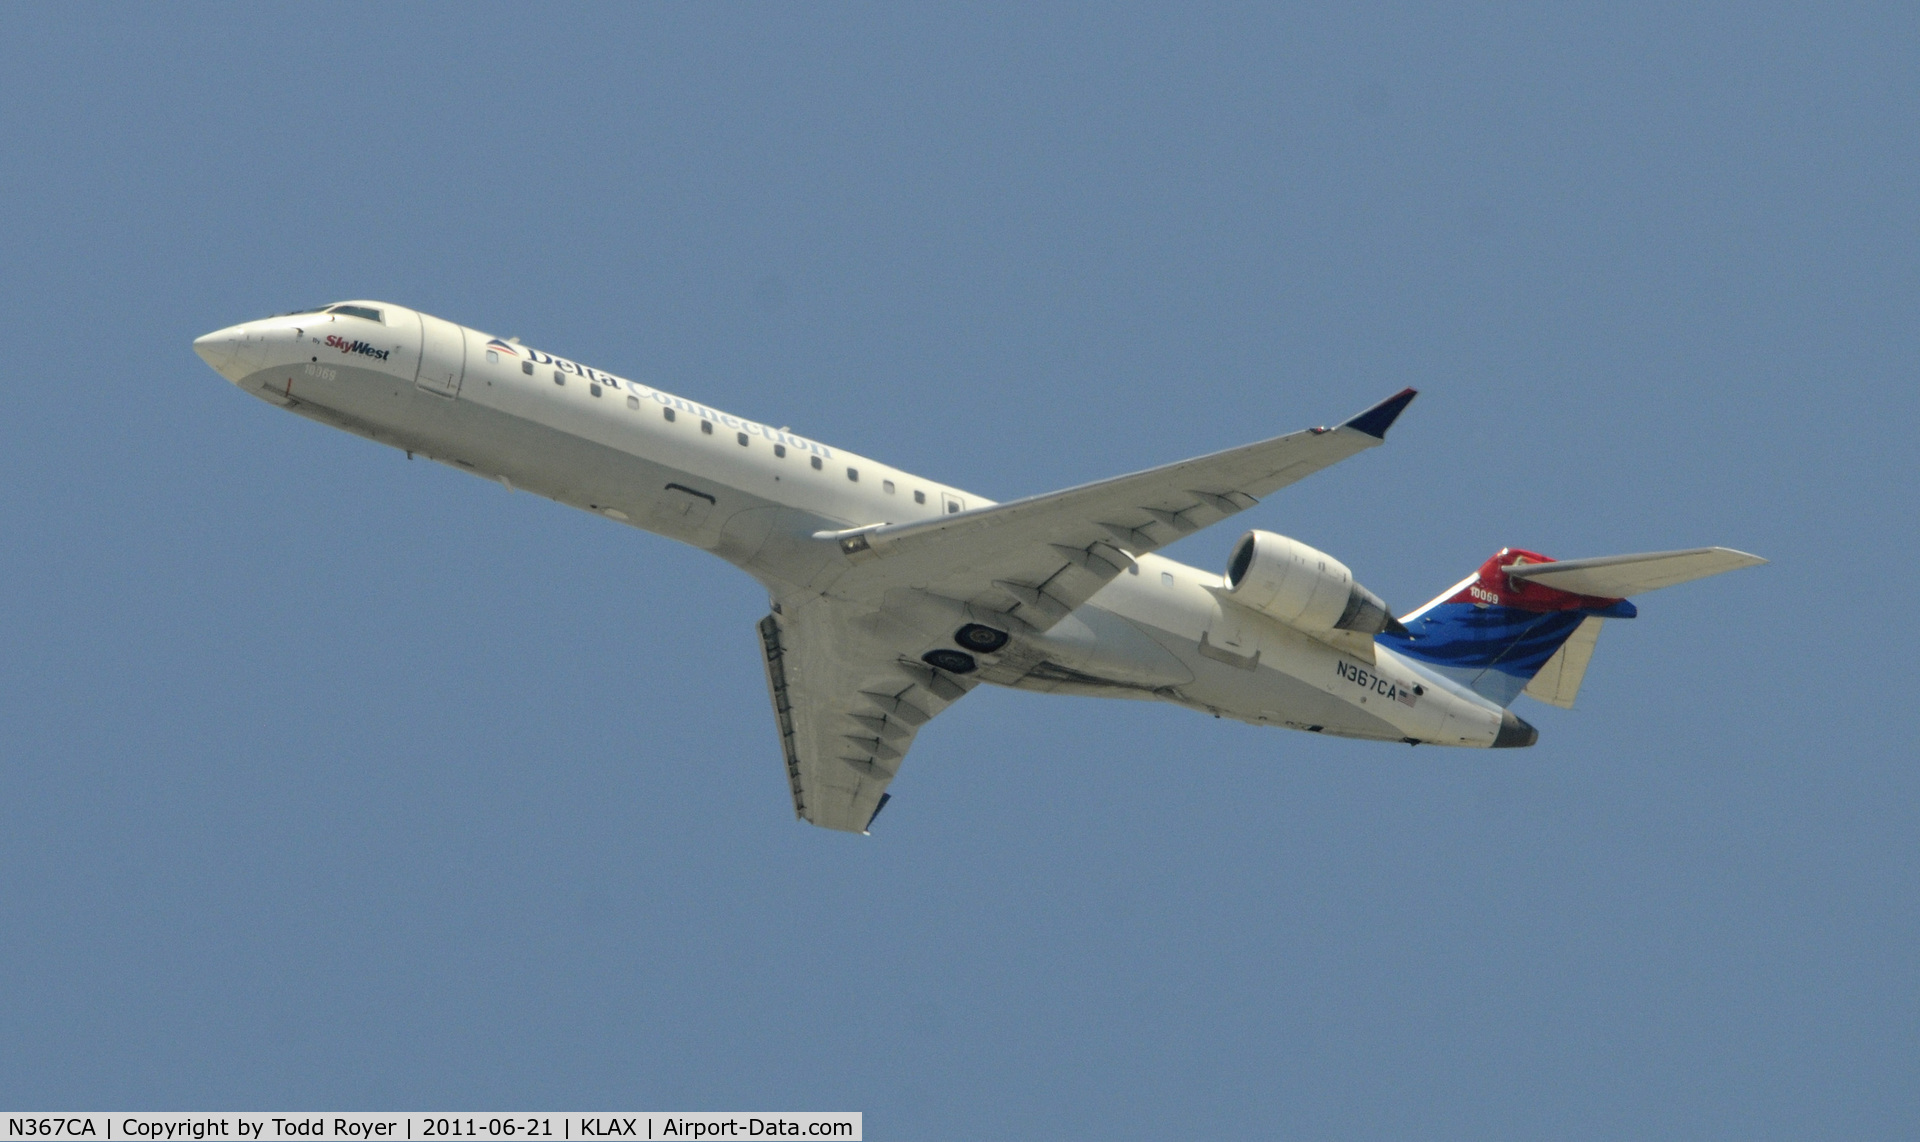 N367CA, 2002 Bombardier CRJ-701 (CL-600-2C10) Regional Jet C/N 10069, Departing LAX